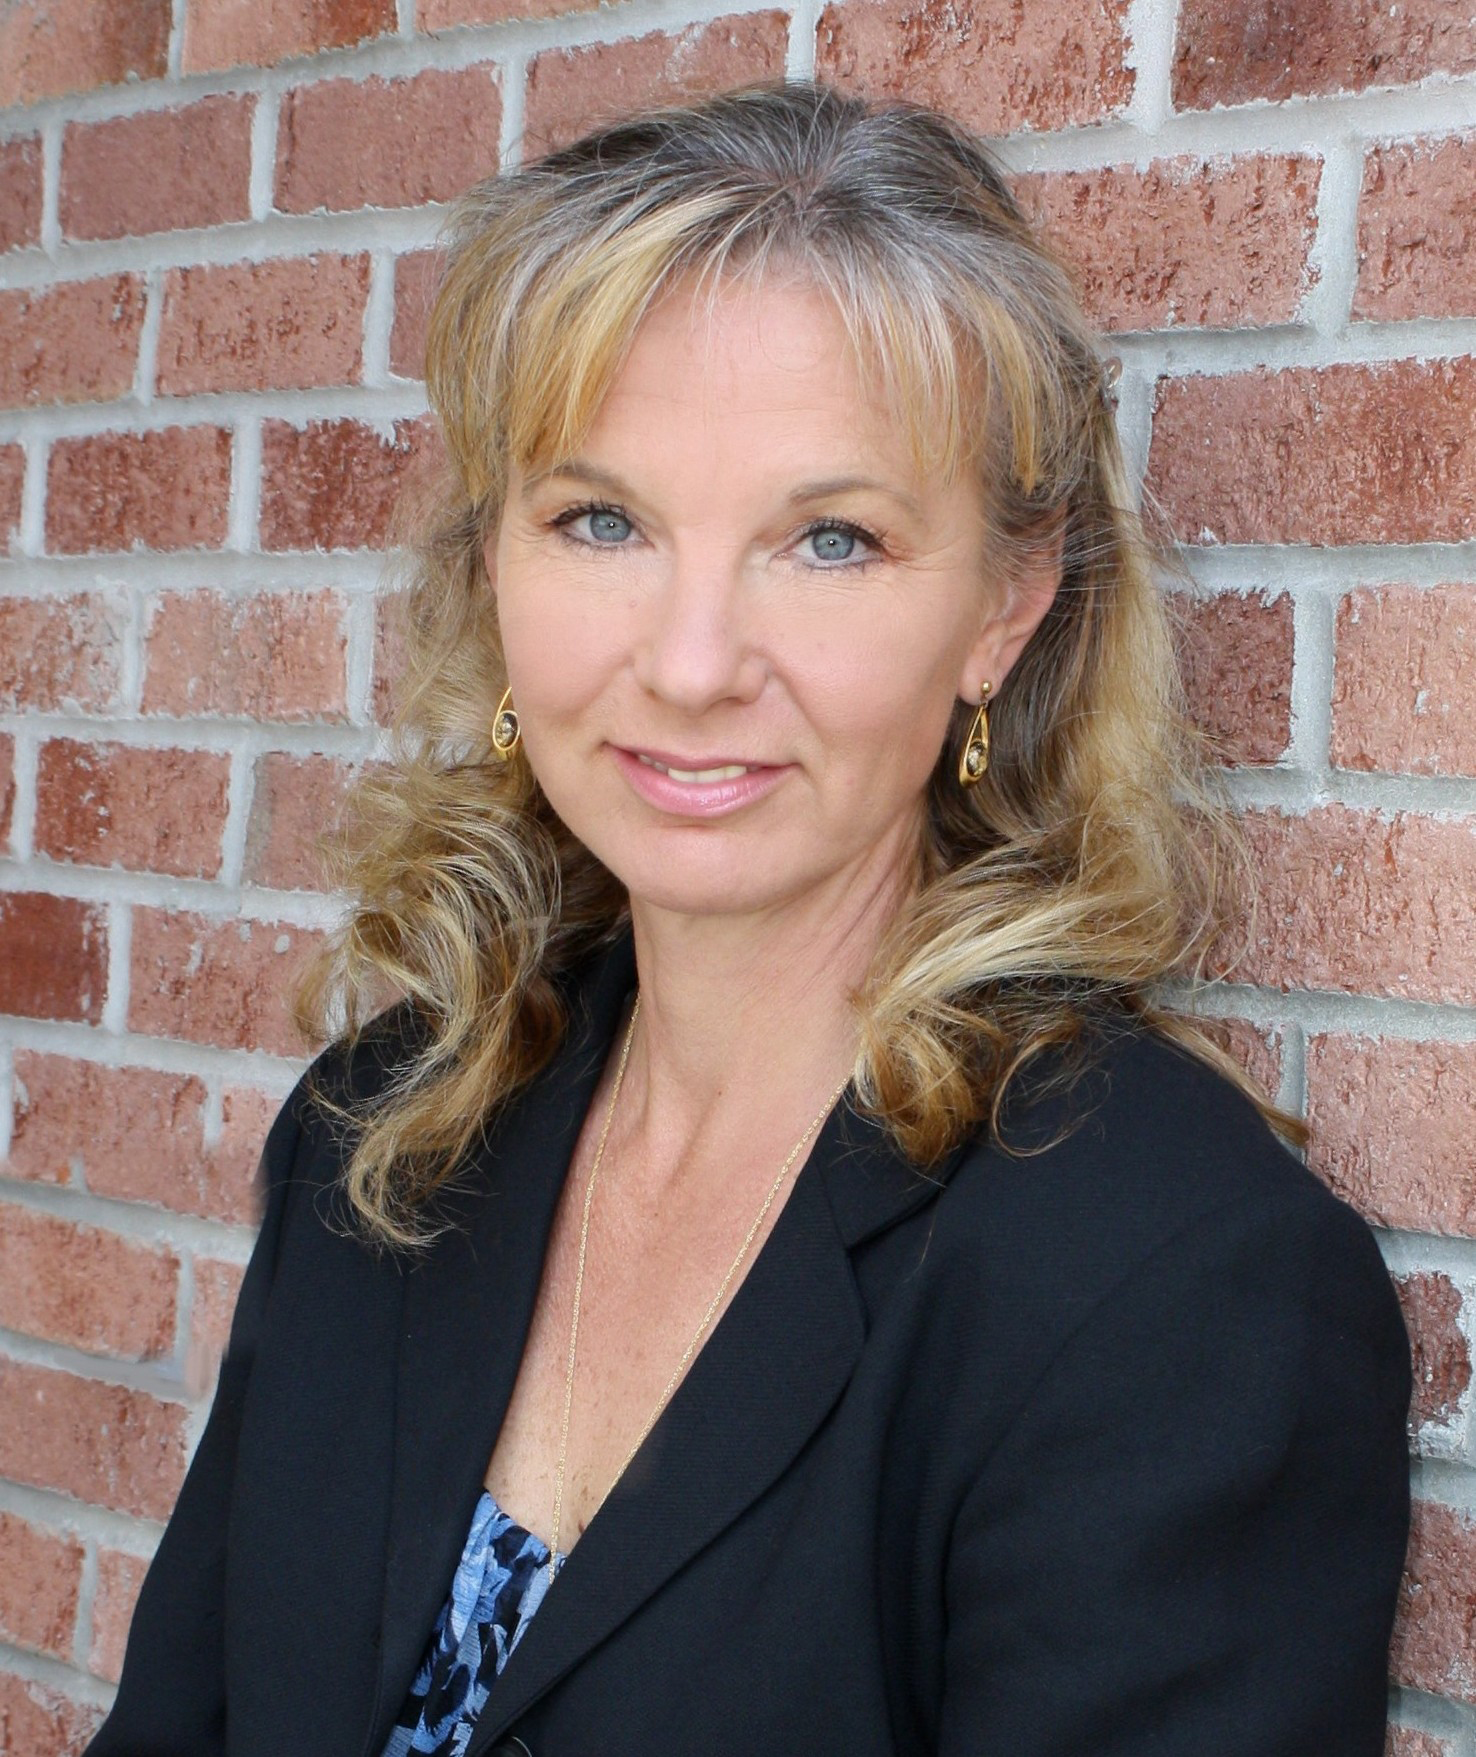 Author Lisa Black